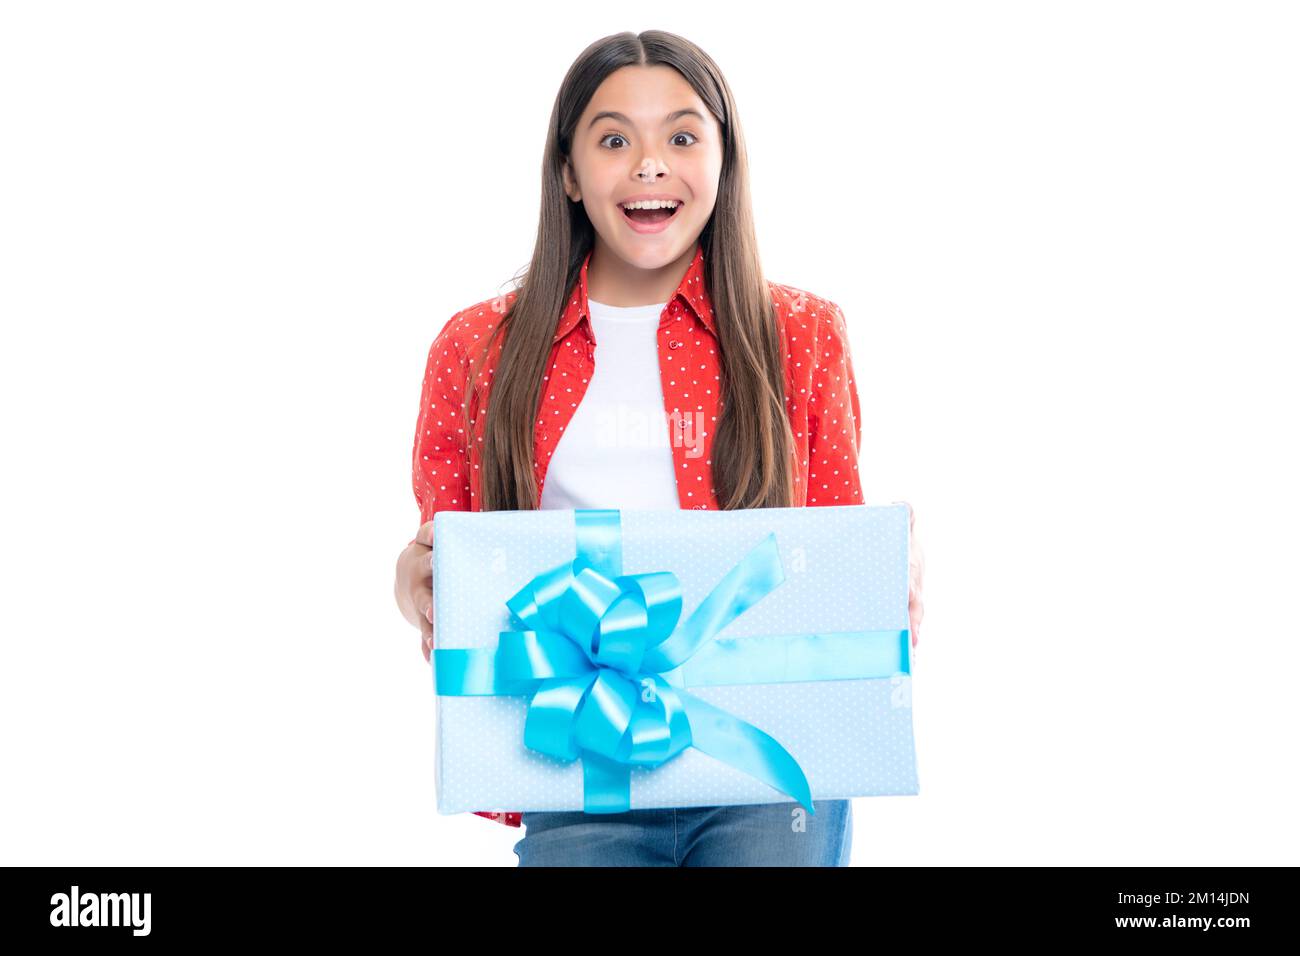 Kind Teenager Mädchen 12-14 Jahre alt mit Geschenk auf isoliertem weißem Hintergrund. Geburtstag, Feiertagskonzept. Teenager halten Geschenkbox. Porträt der Emotionen Stockfoto